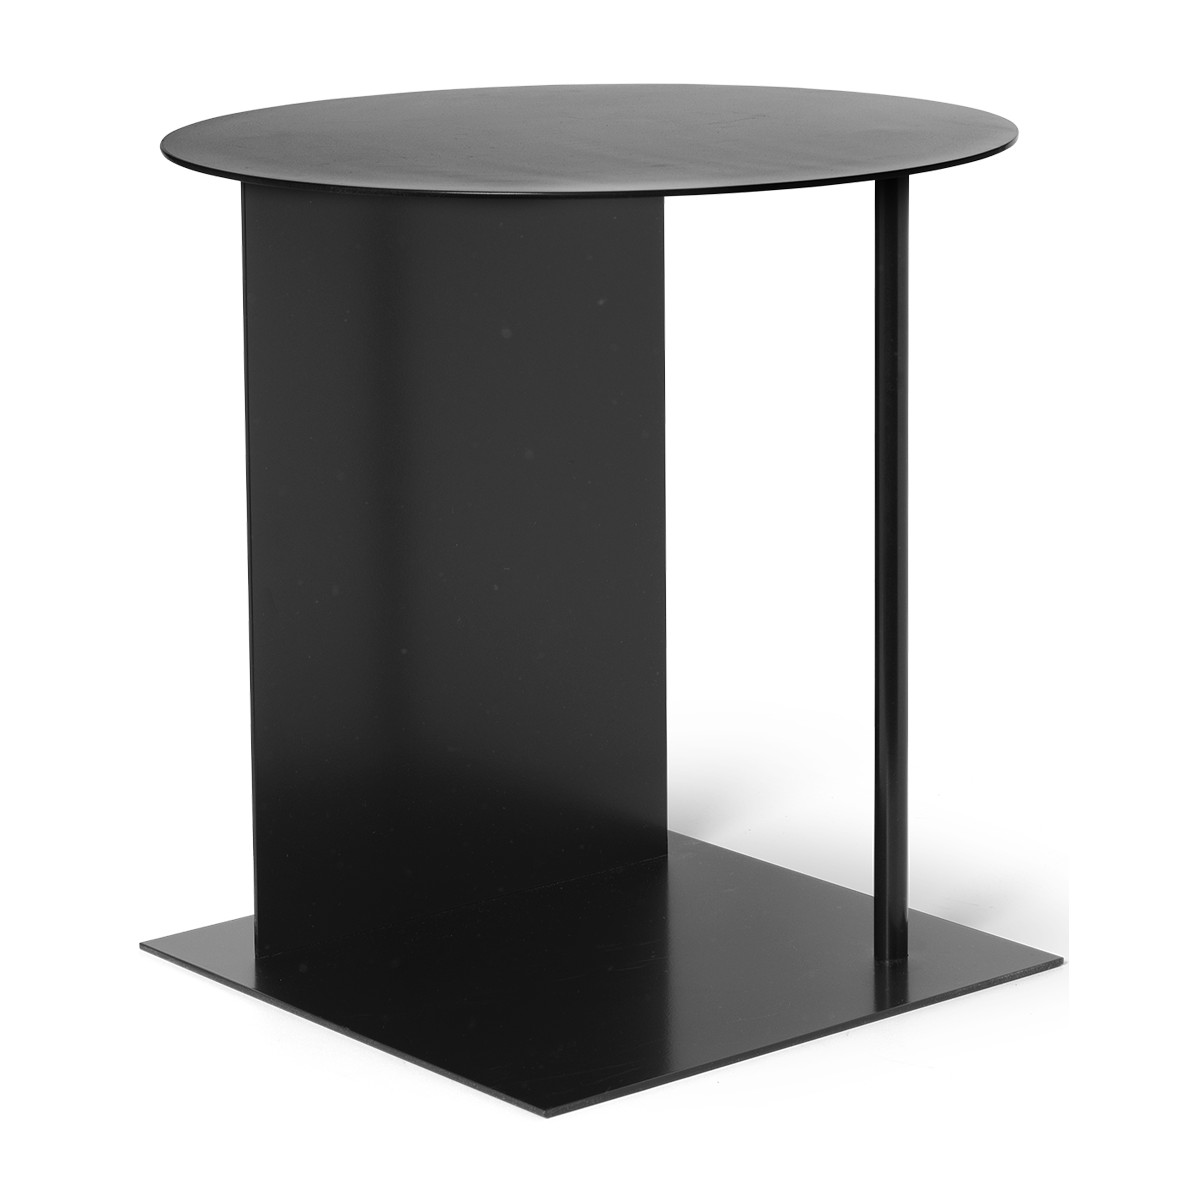 Place side table - matte black